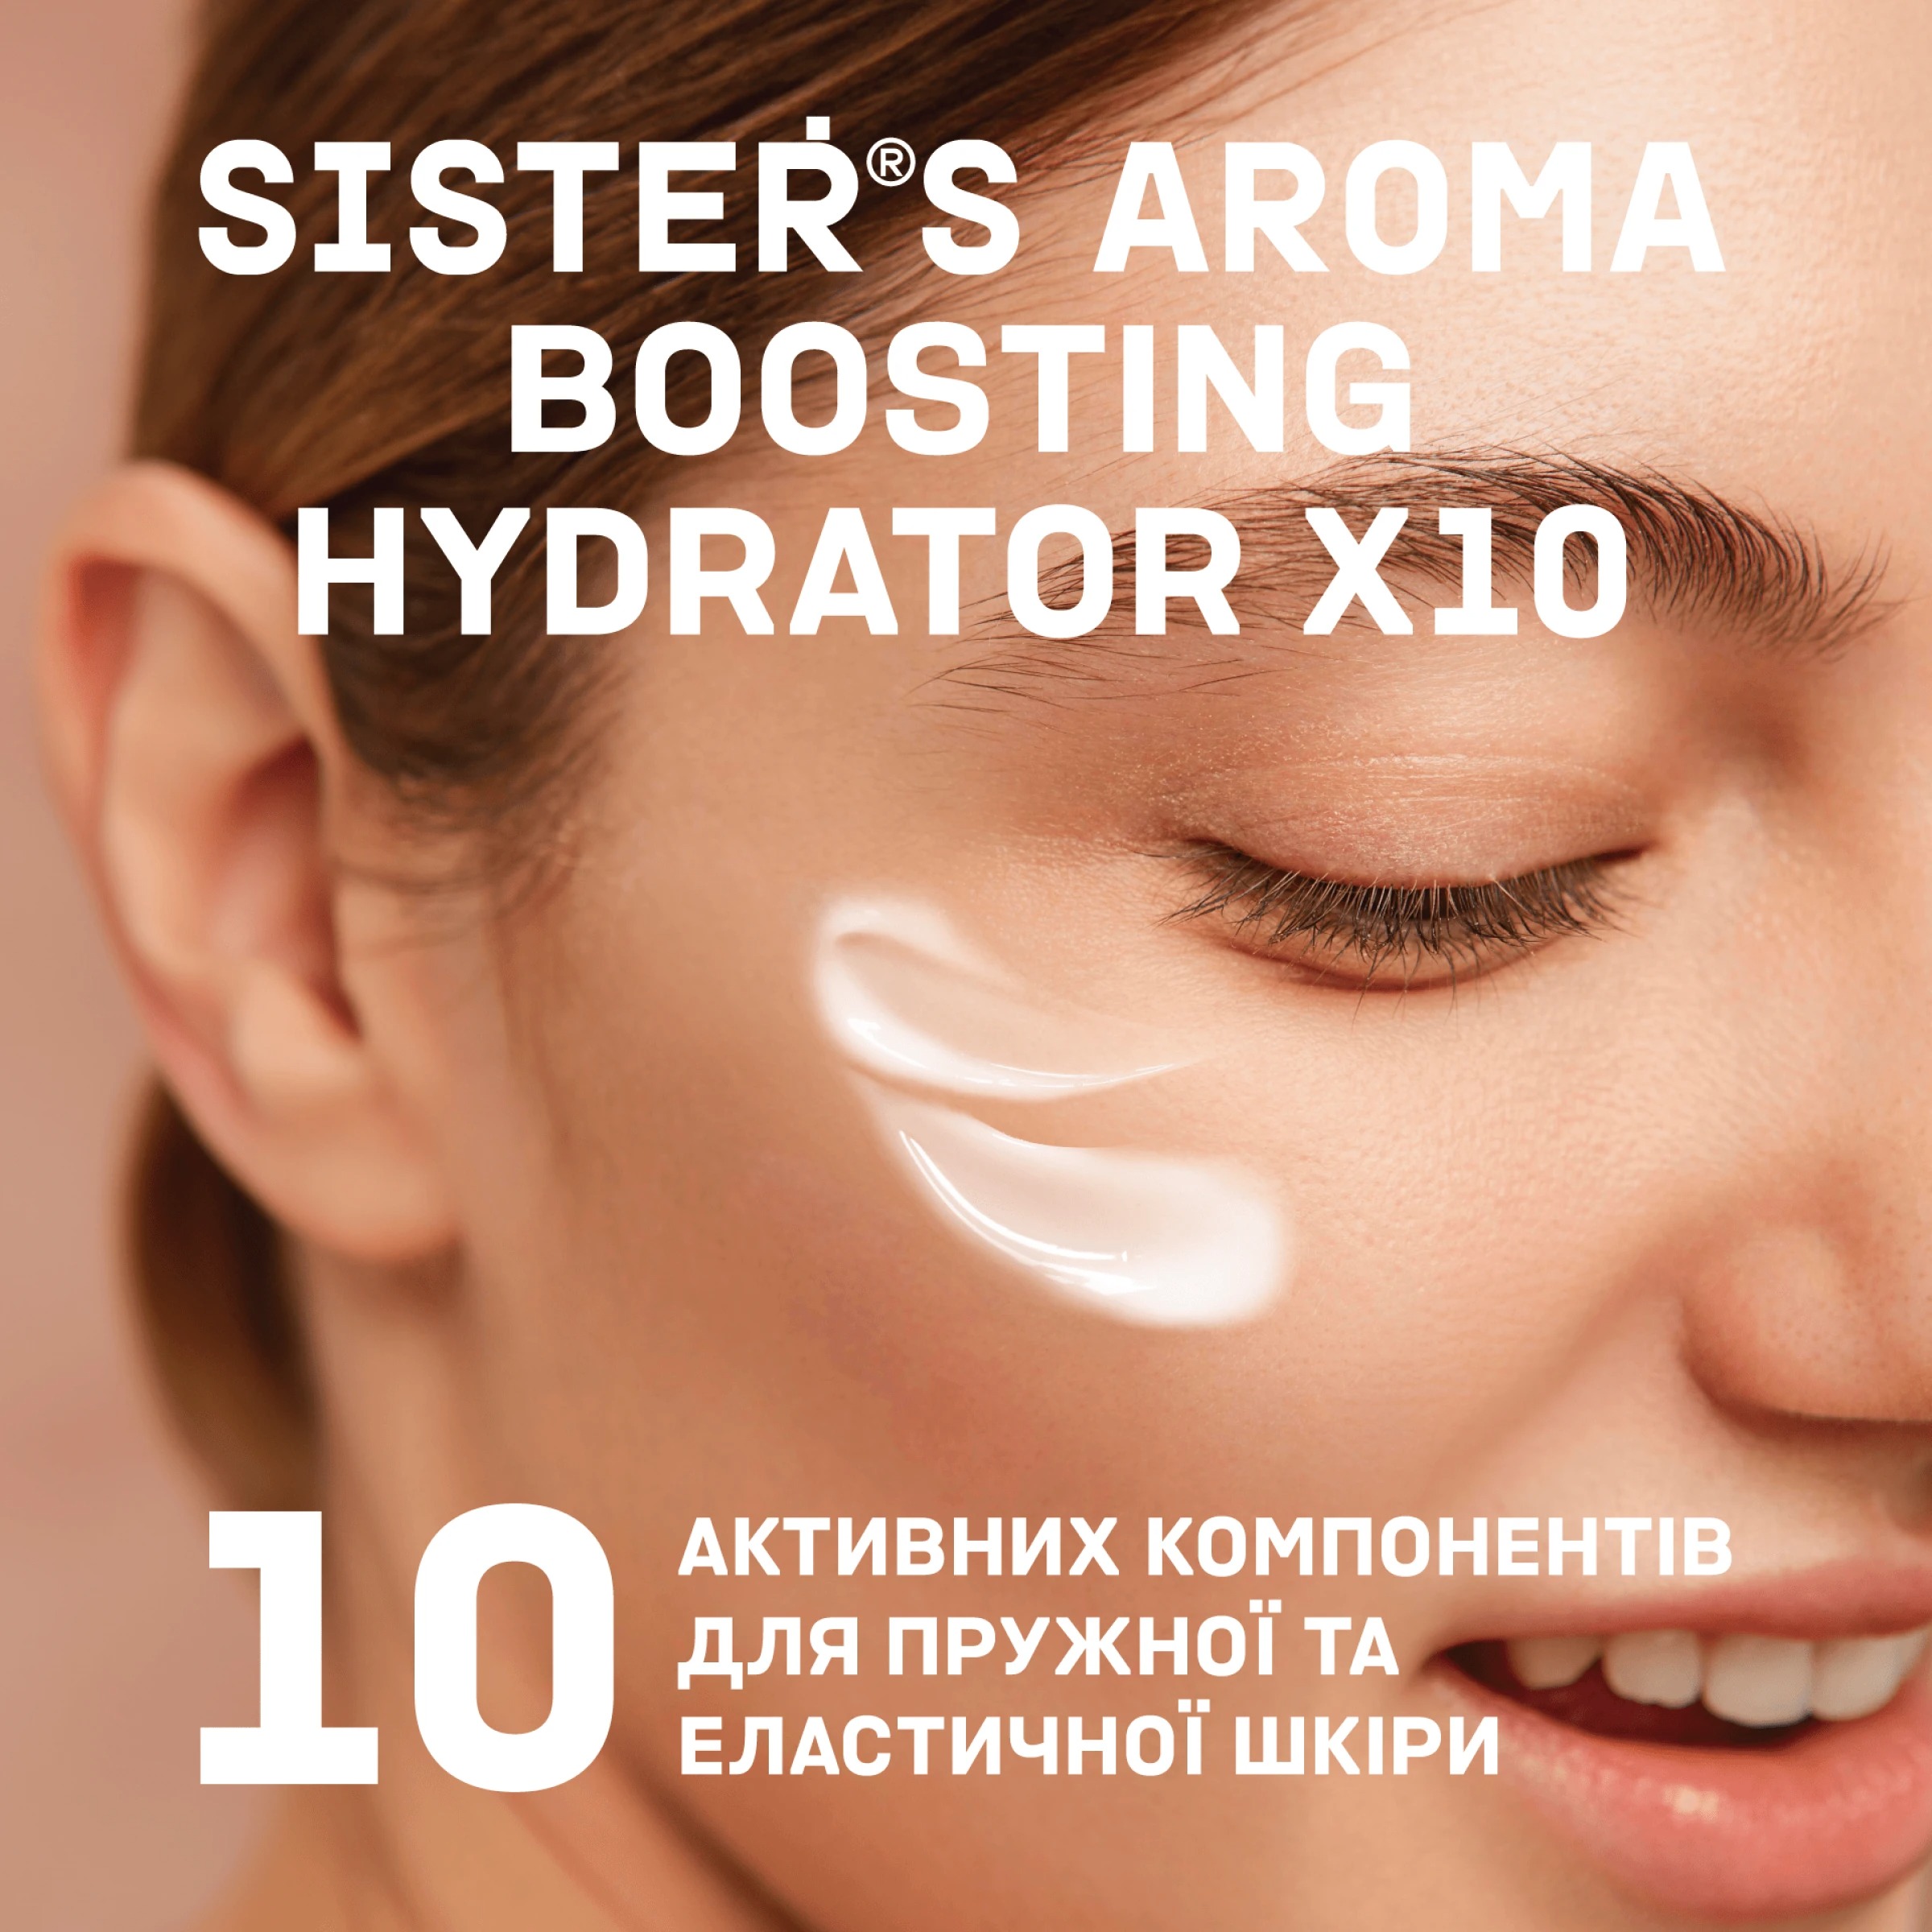 Гель-крем для обличчя Sister's Aroma Boosting Hydrater X10 зволожуючий 50 мл - фото 4